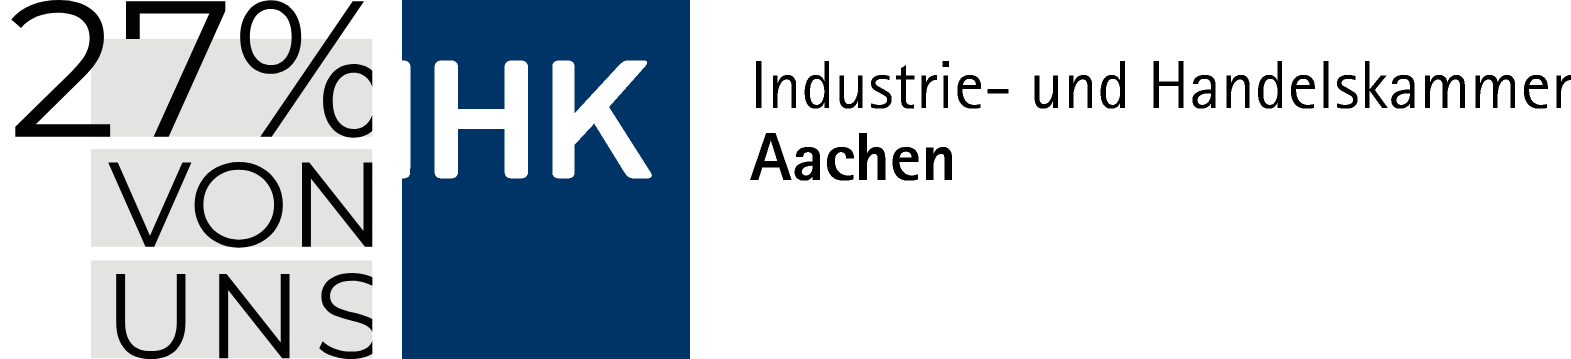 Logistikregion Aachen